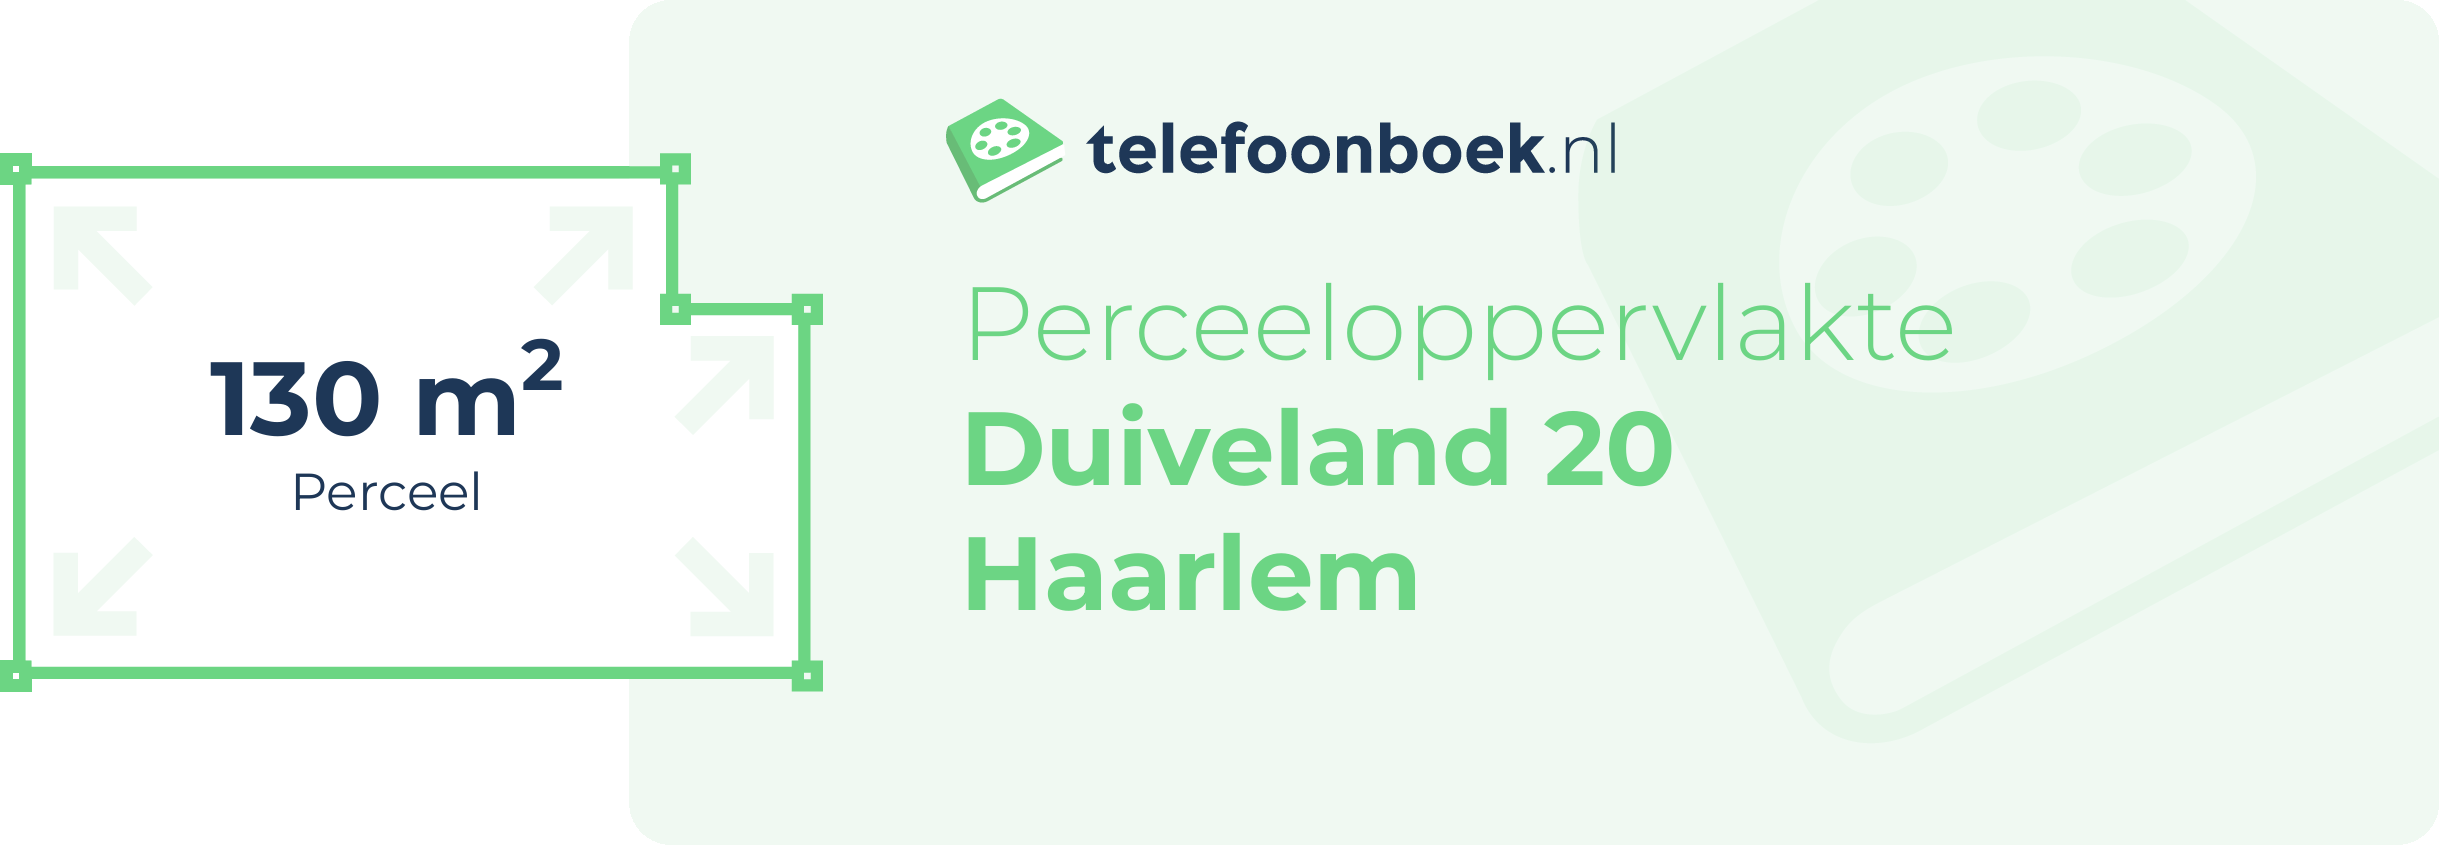 Perceeloppervlakte Duiveland 20 Haarlem